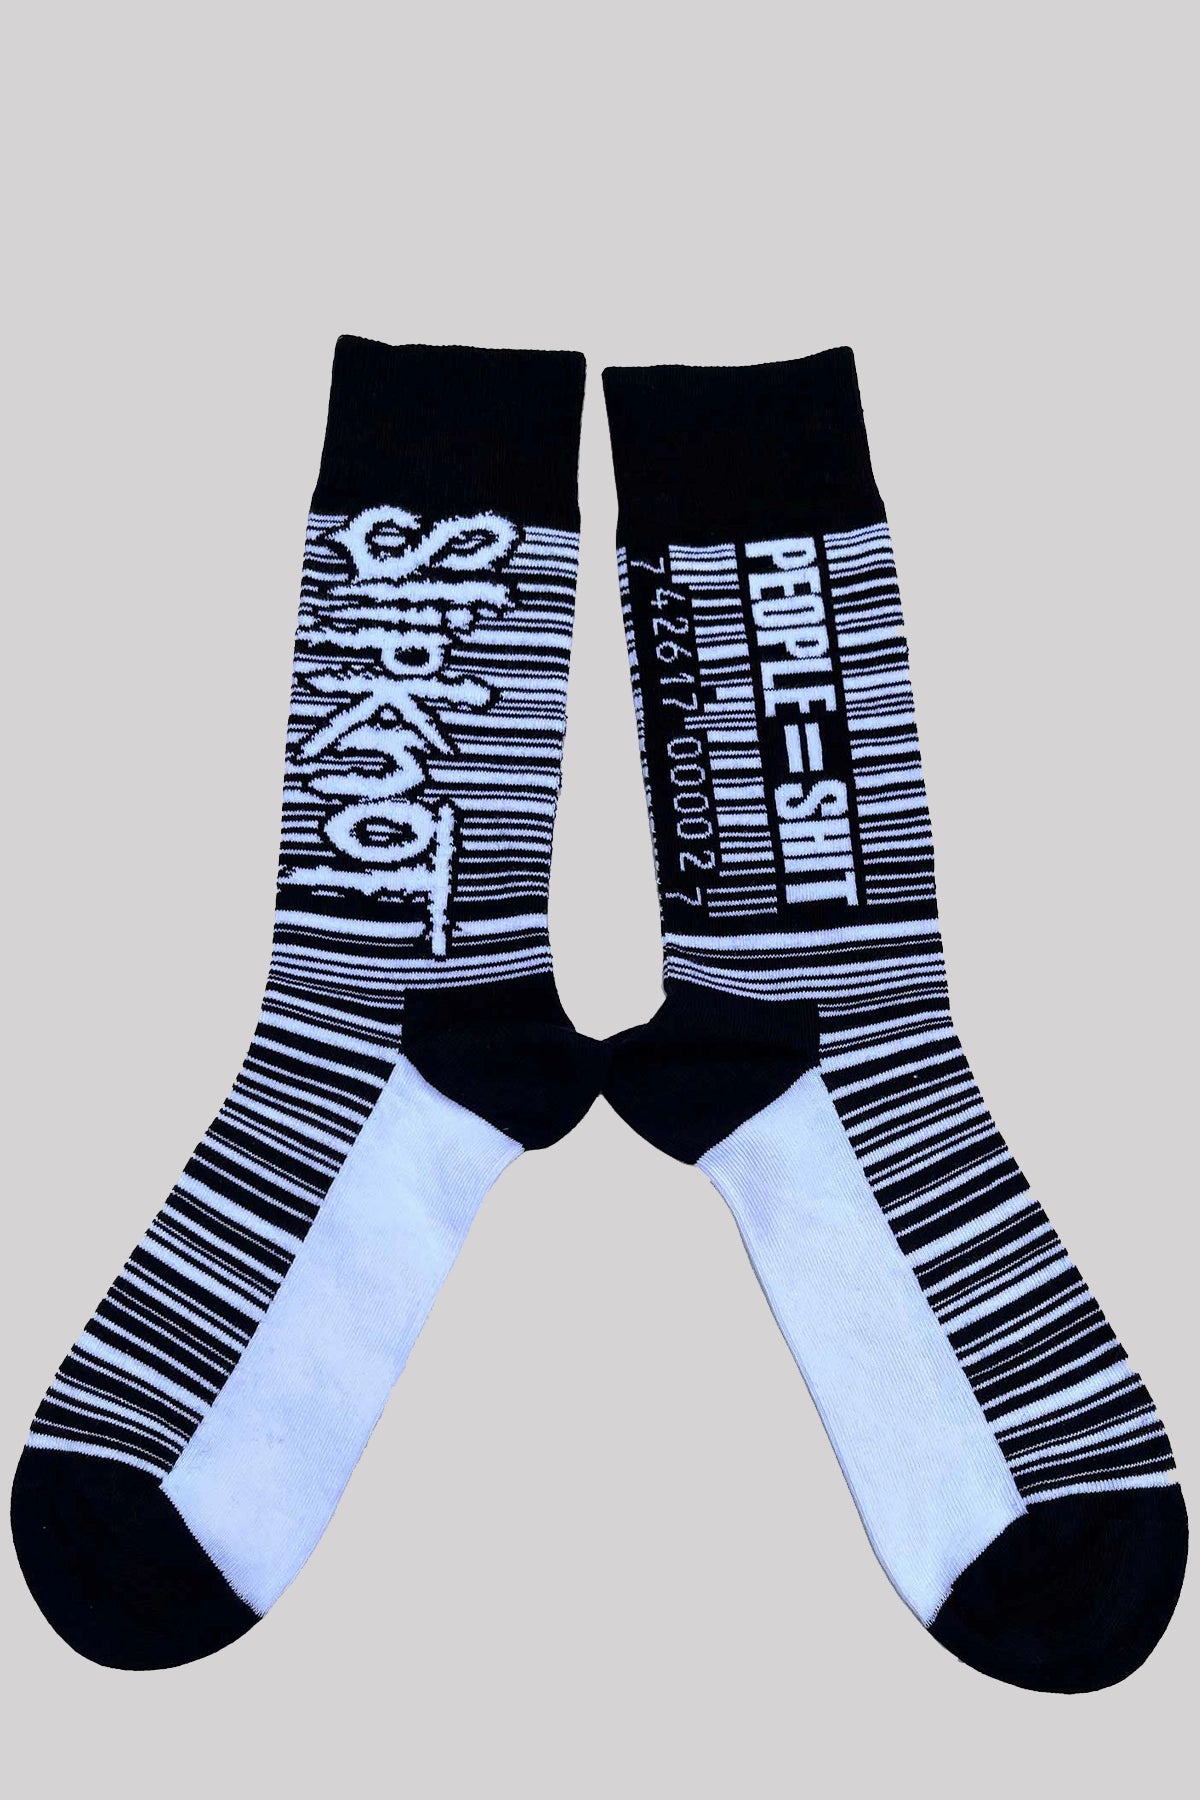 Slipknot Unisex Ankle Socks: Barcode Official Merchandise